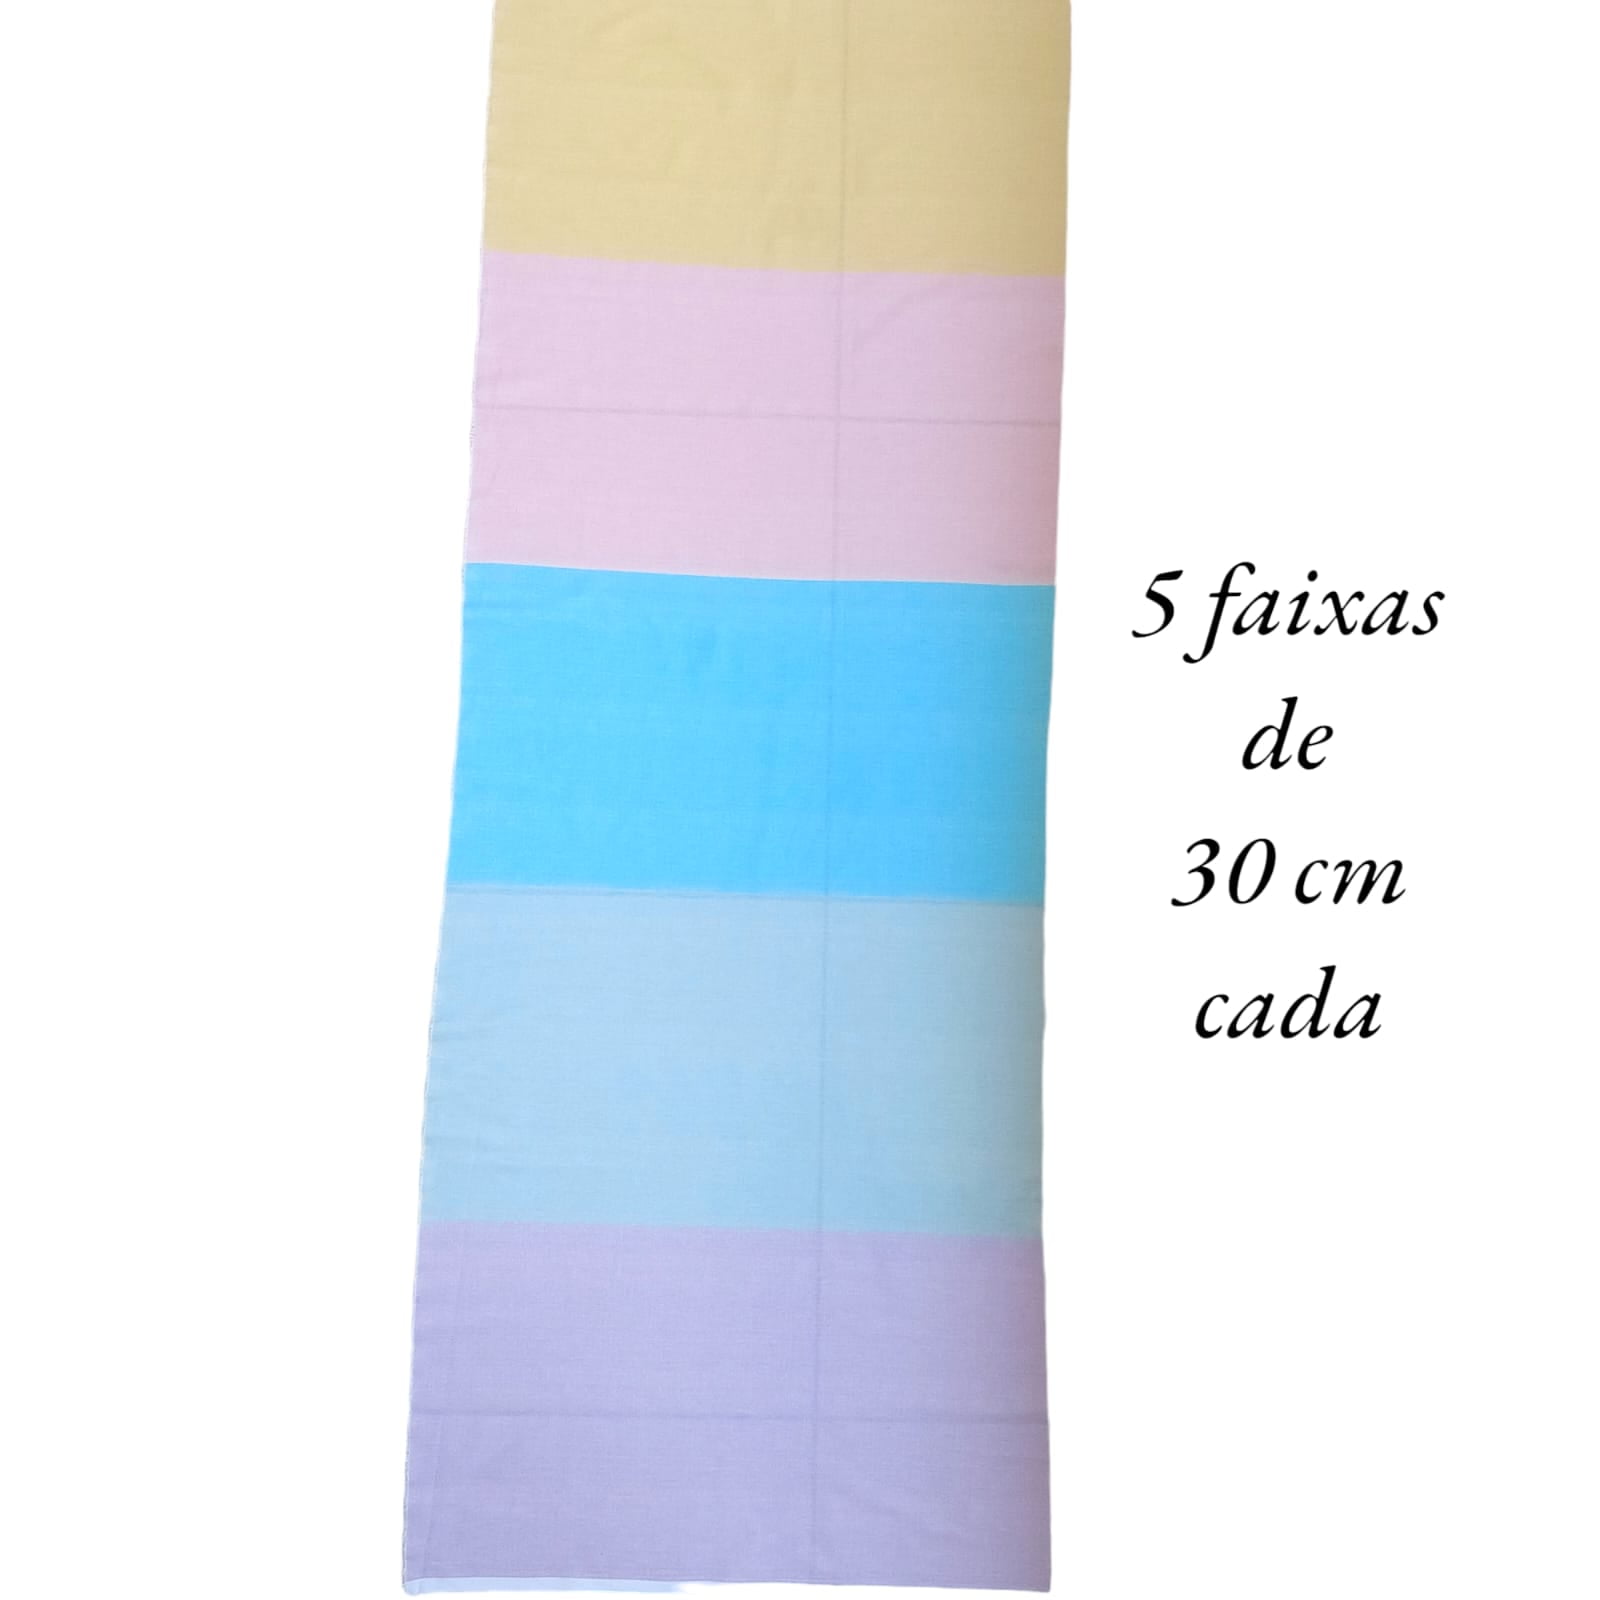 Tecido Tricoline digital - textura candy variados - Col. Basics for All - Fernando Maluhy  (50x1,50 cm)                              